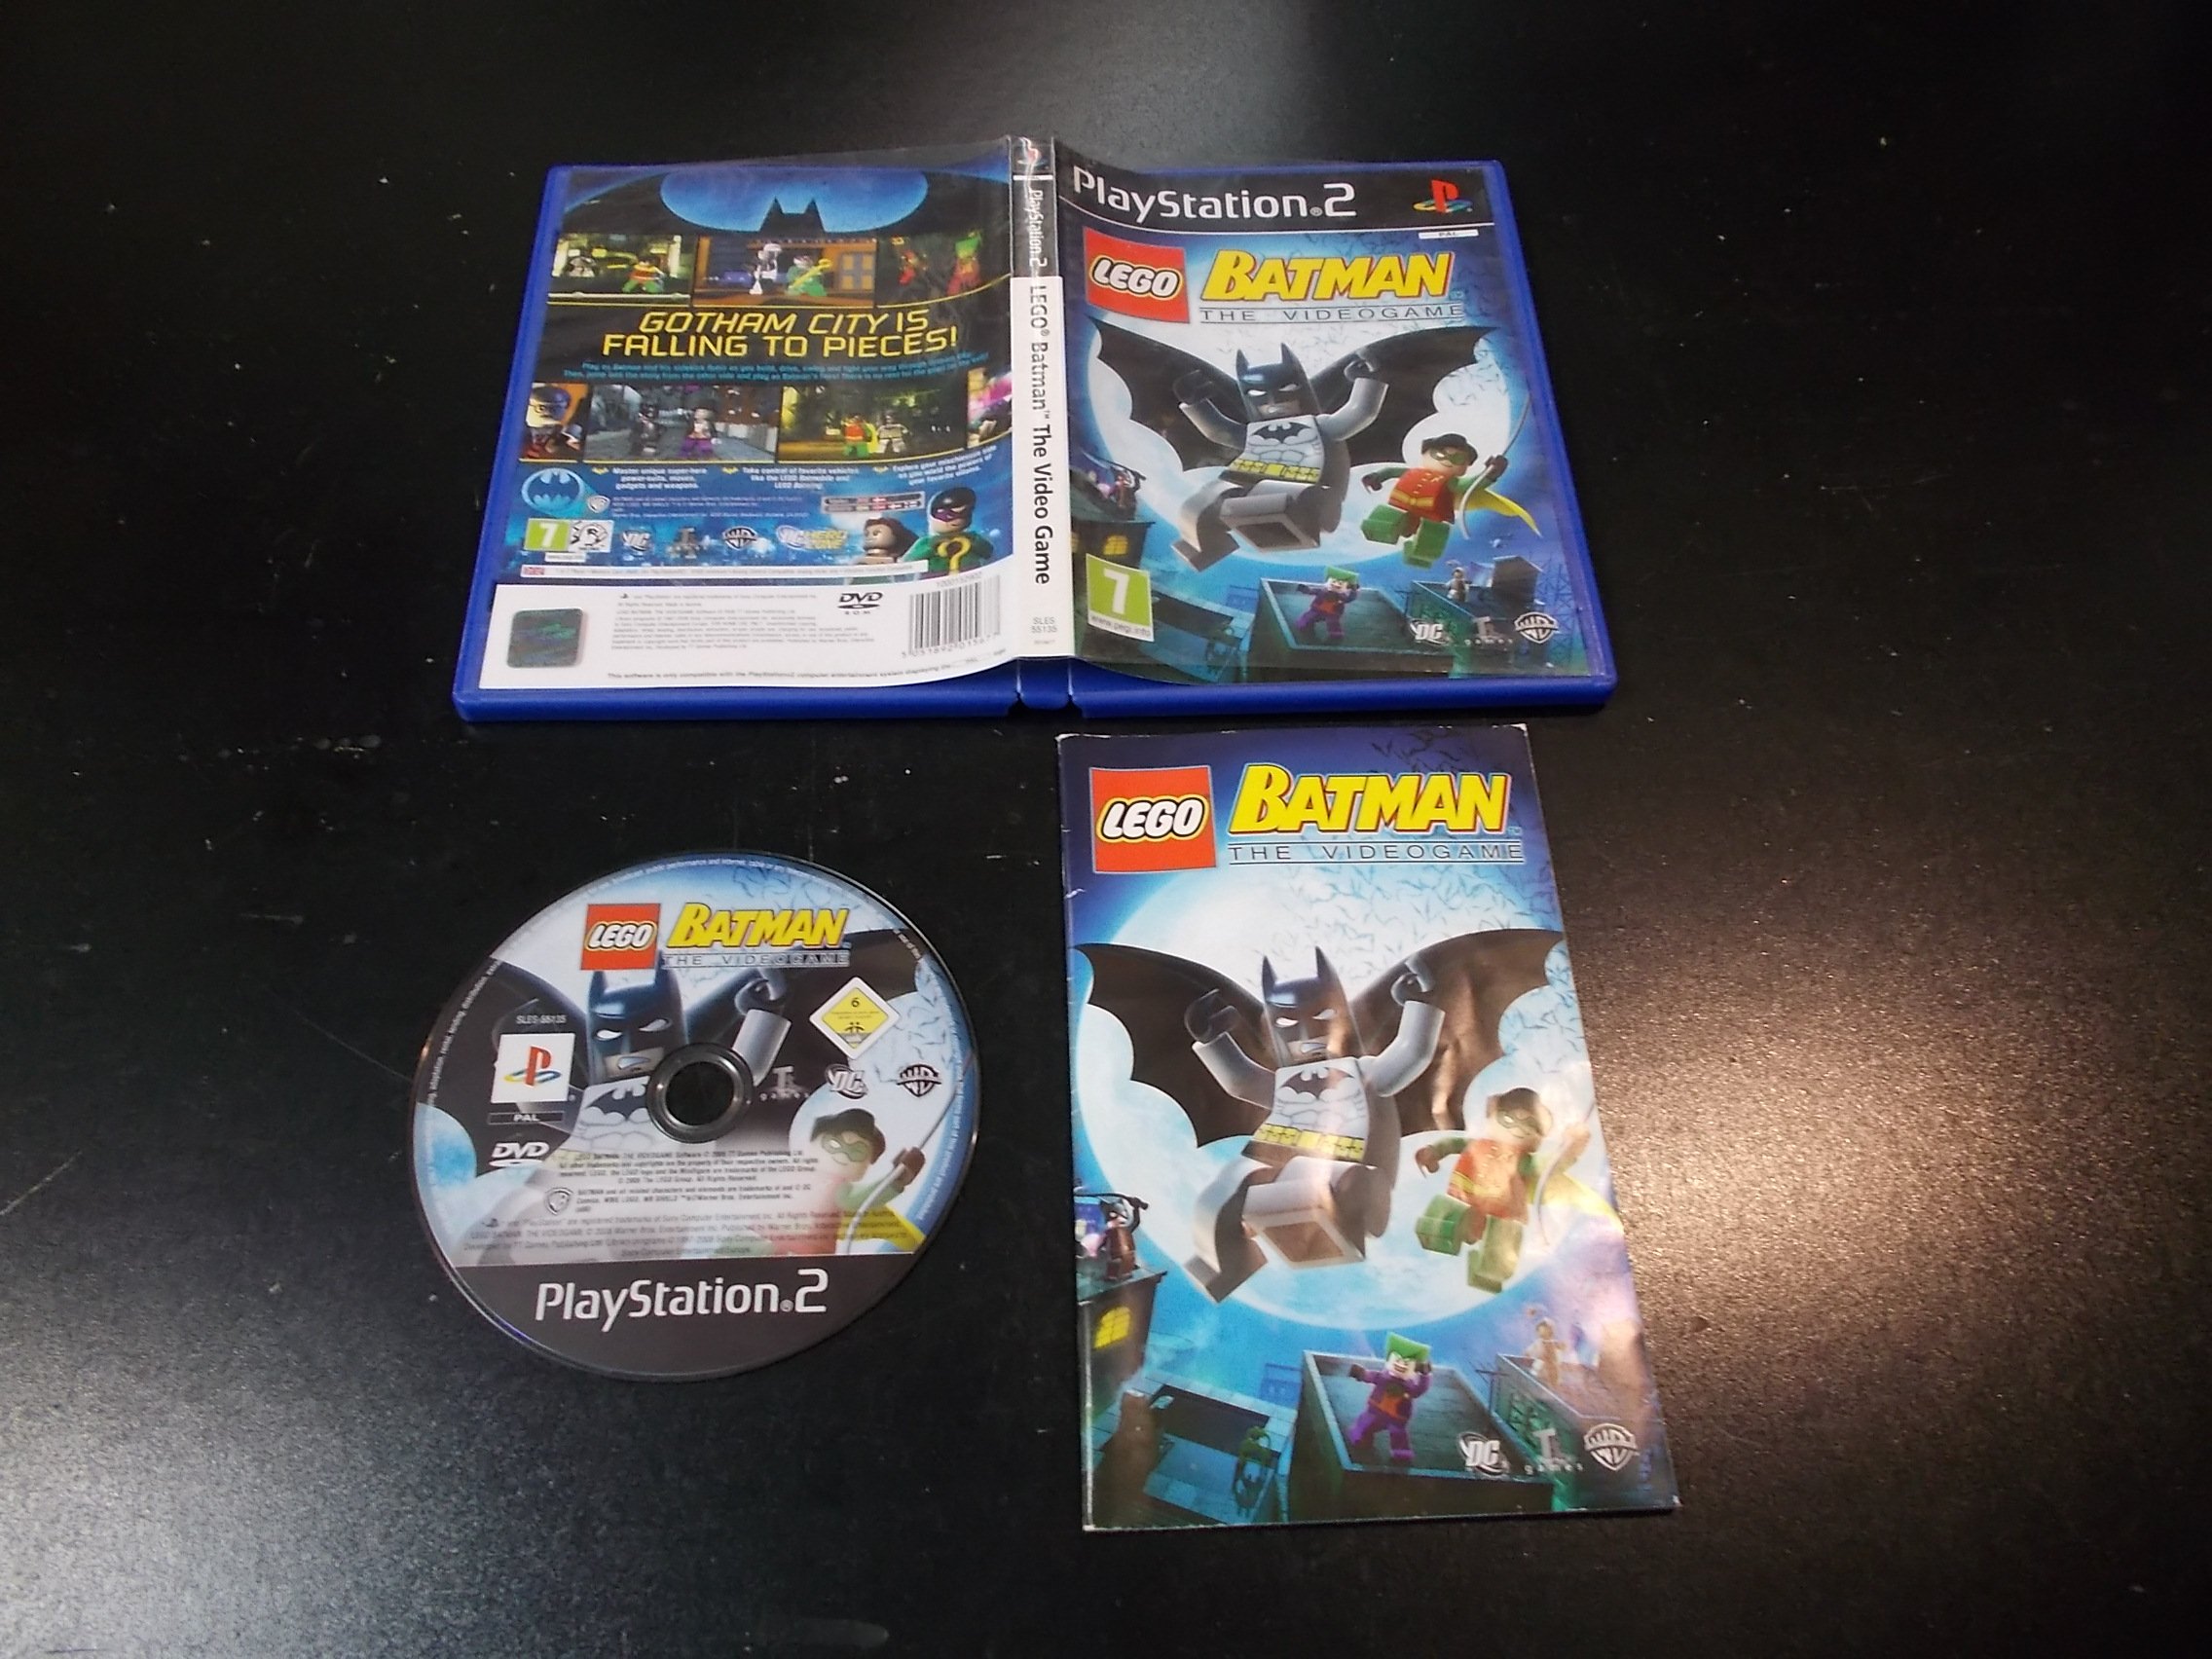 Lego Batman Video Game - GRA Ps2 - 0335